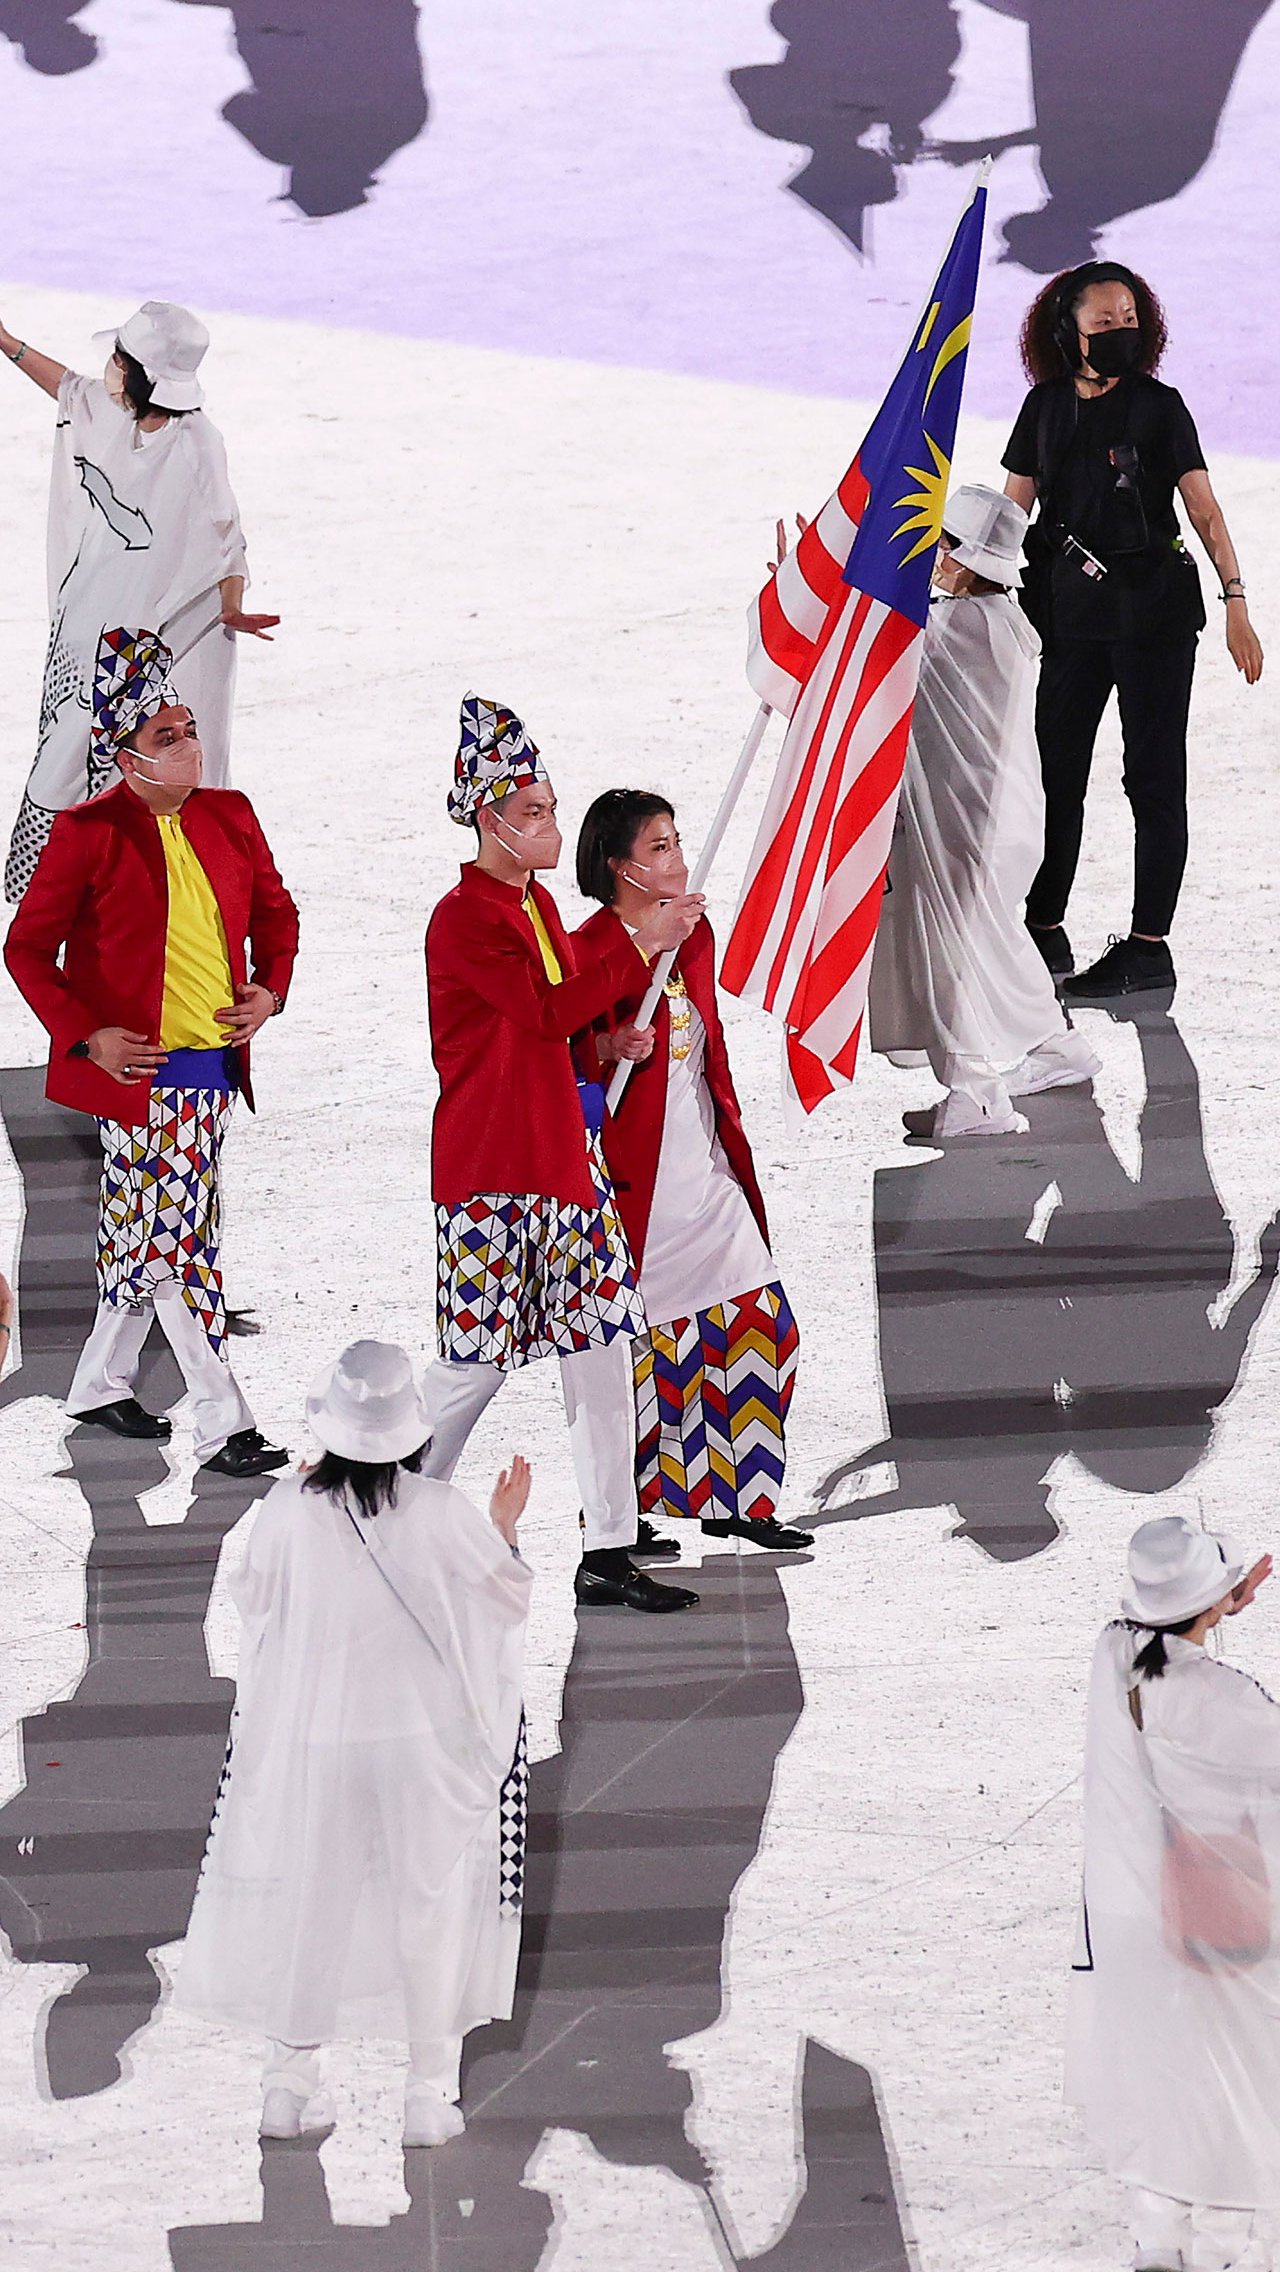 Необычные костюмы выбрали для себя и атлеты из Малайзии. Мужчины пришли одновременно в брюках и юбках, а на головах у них были надеты колпаки!